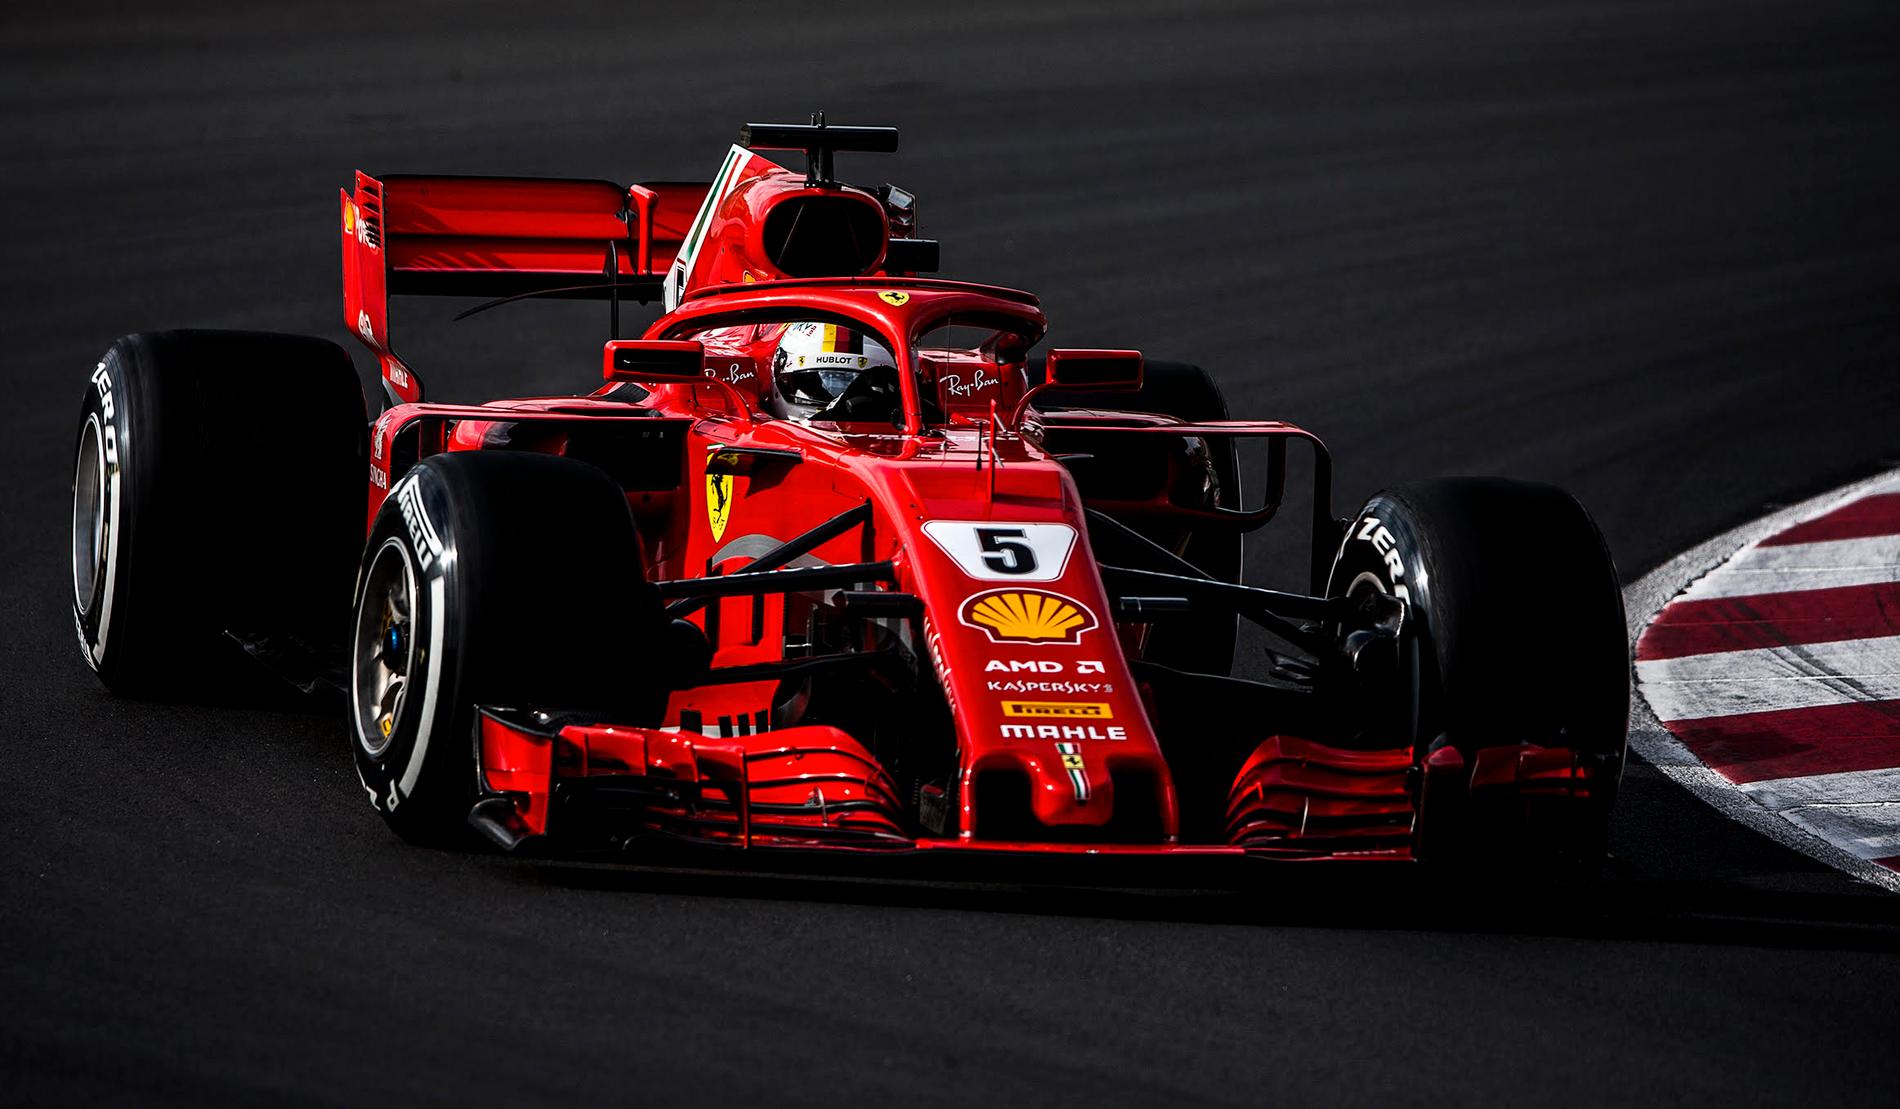 Så såg Ferraris bil ut 2018 - nu är datumet för presentationen 2019 års F1:a  klart. 